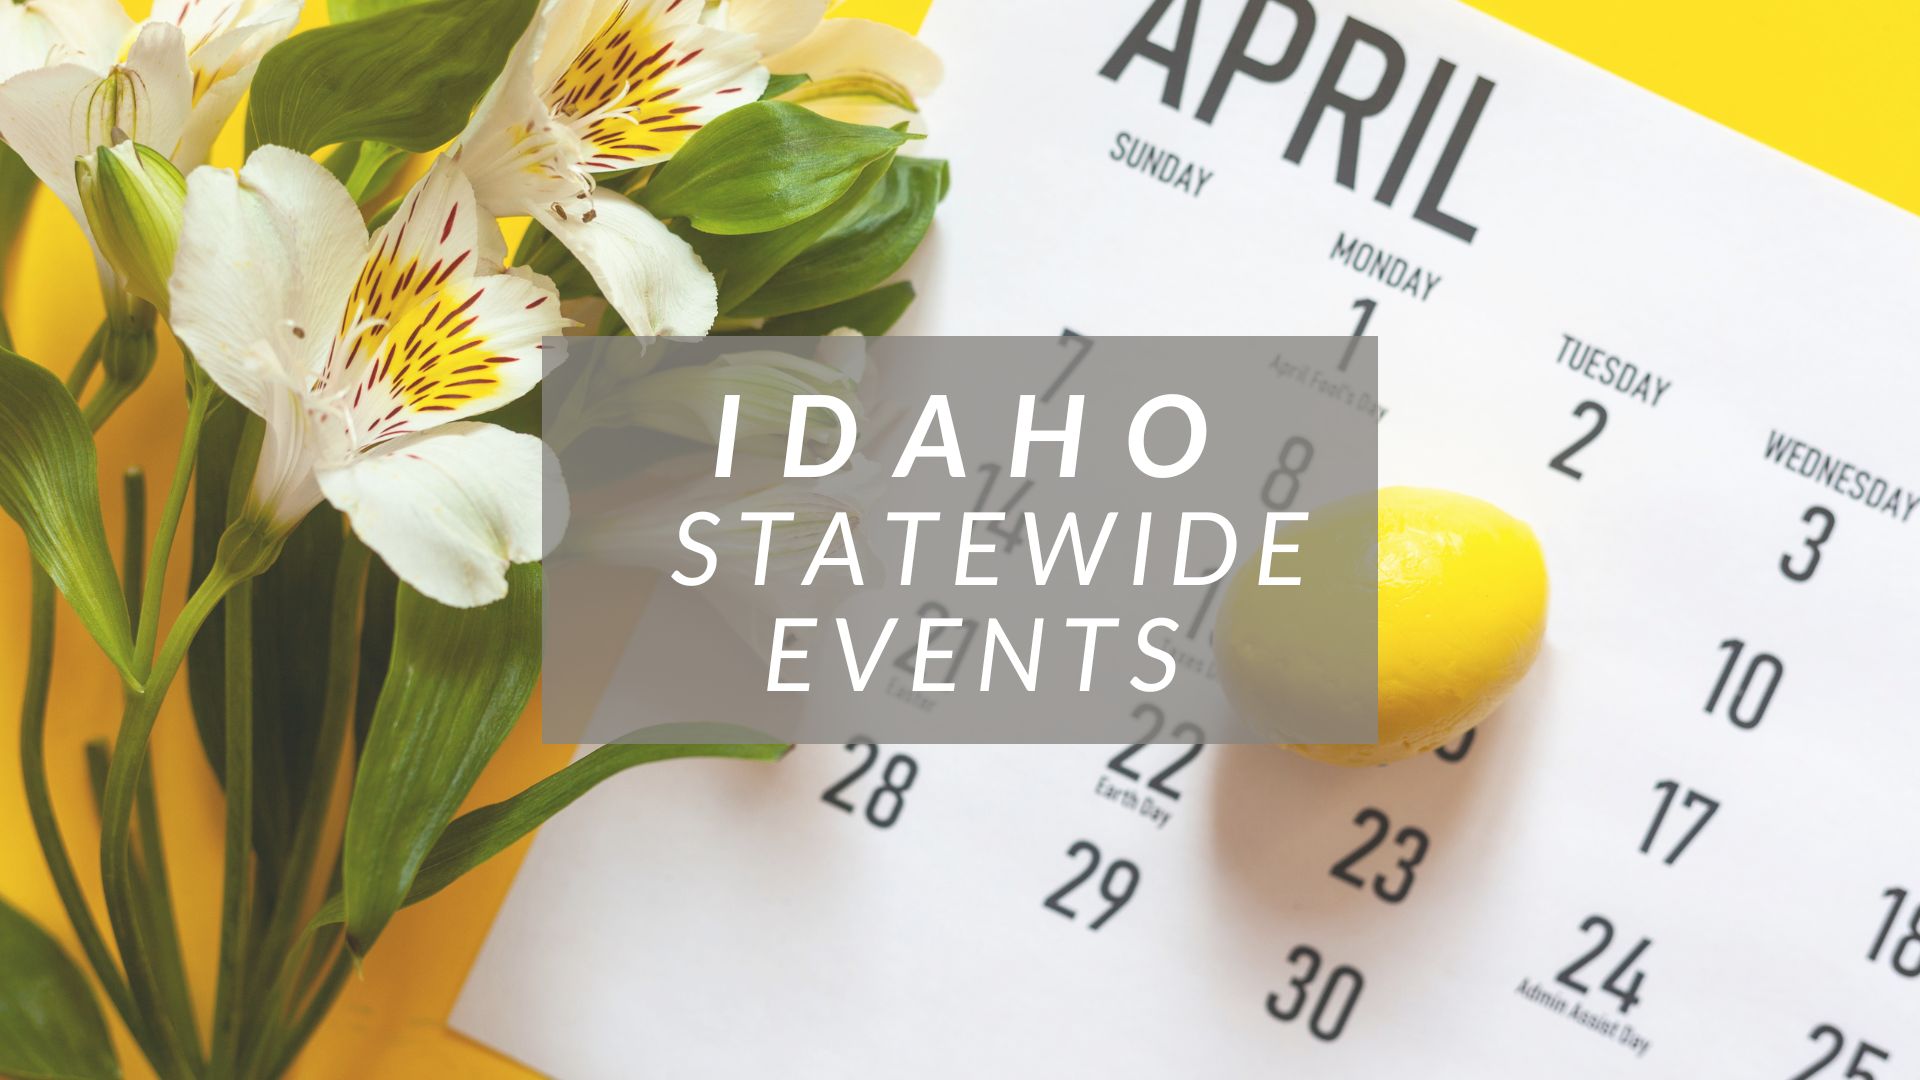 April Events Calendar